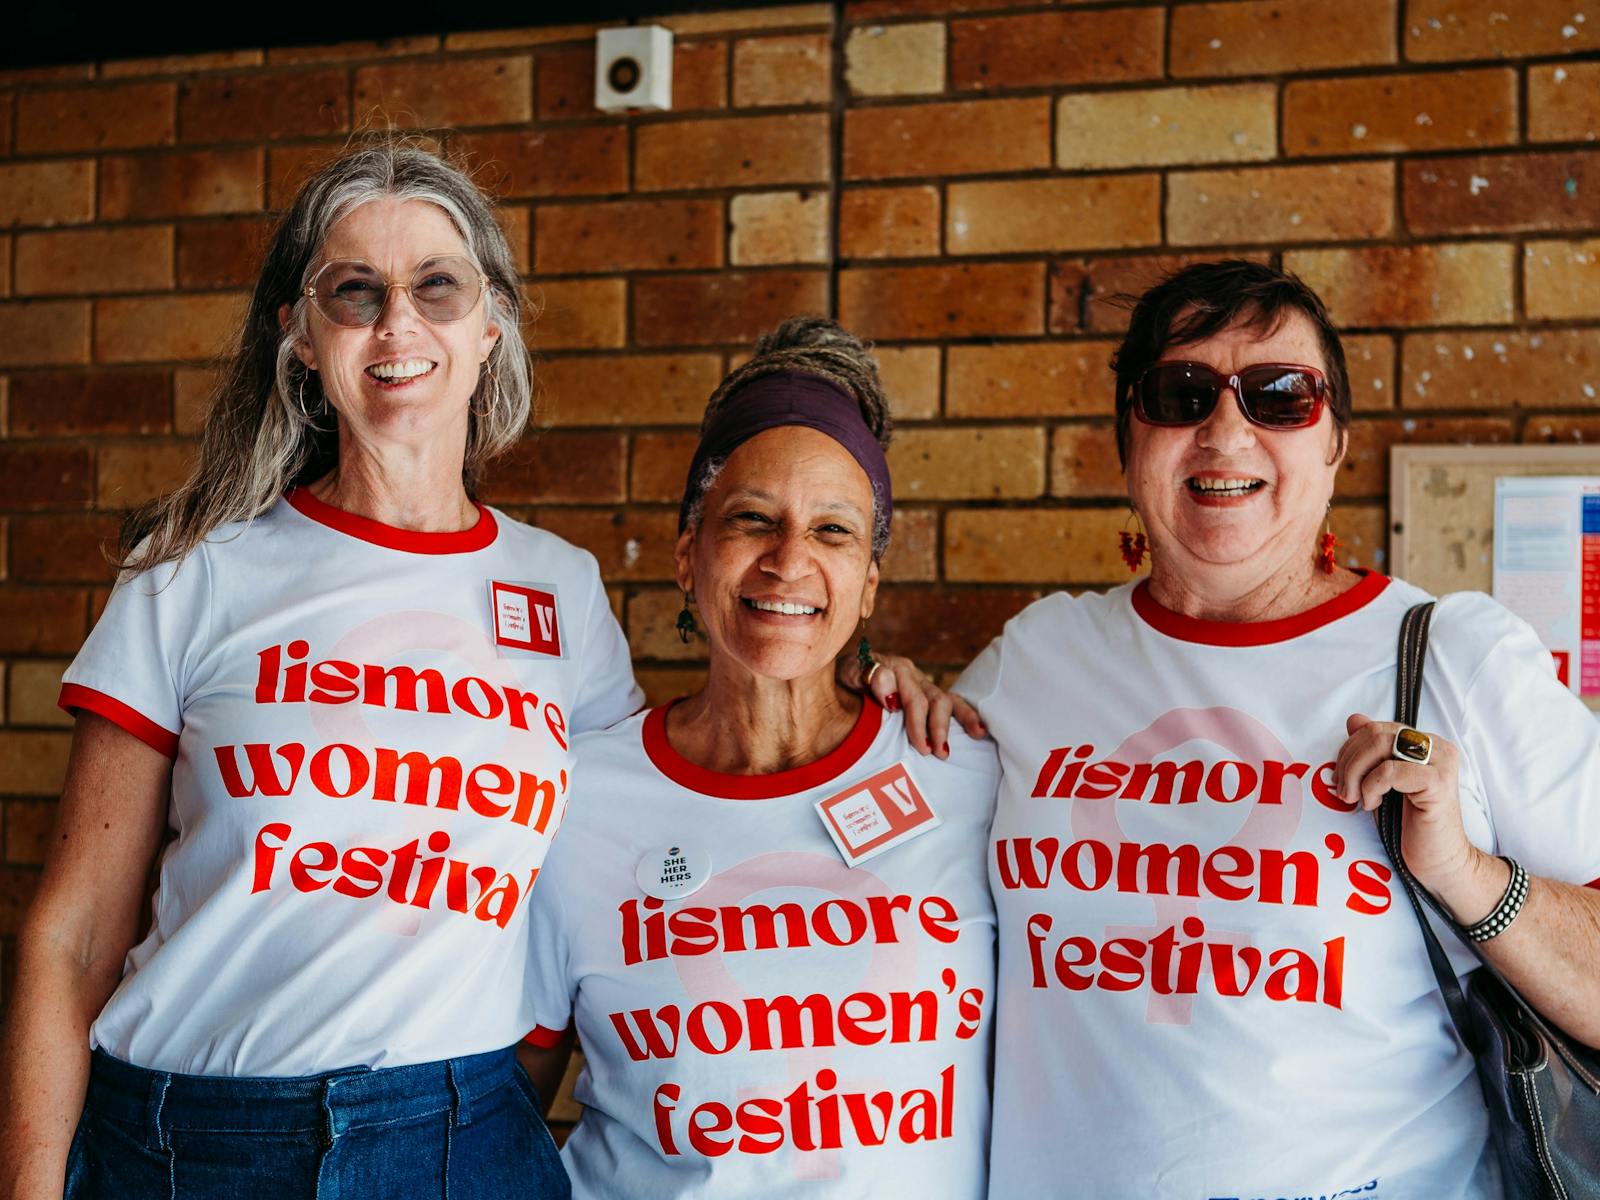 Image for Lismore Women's Festival